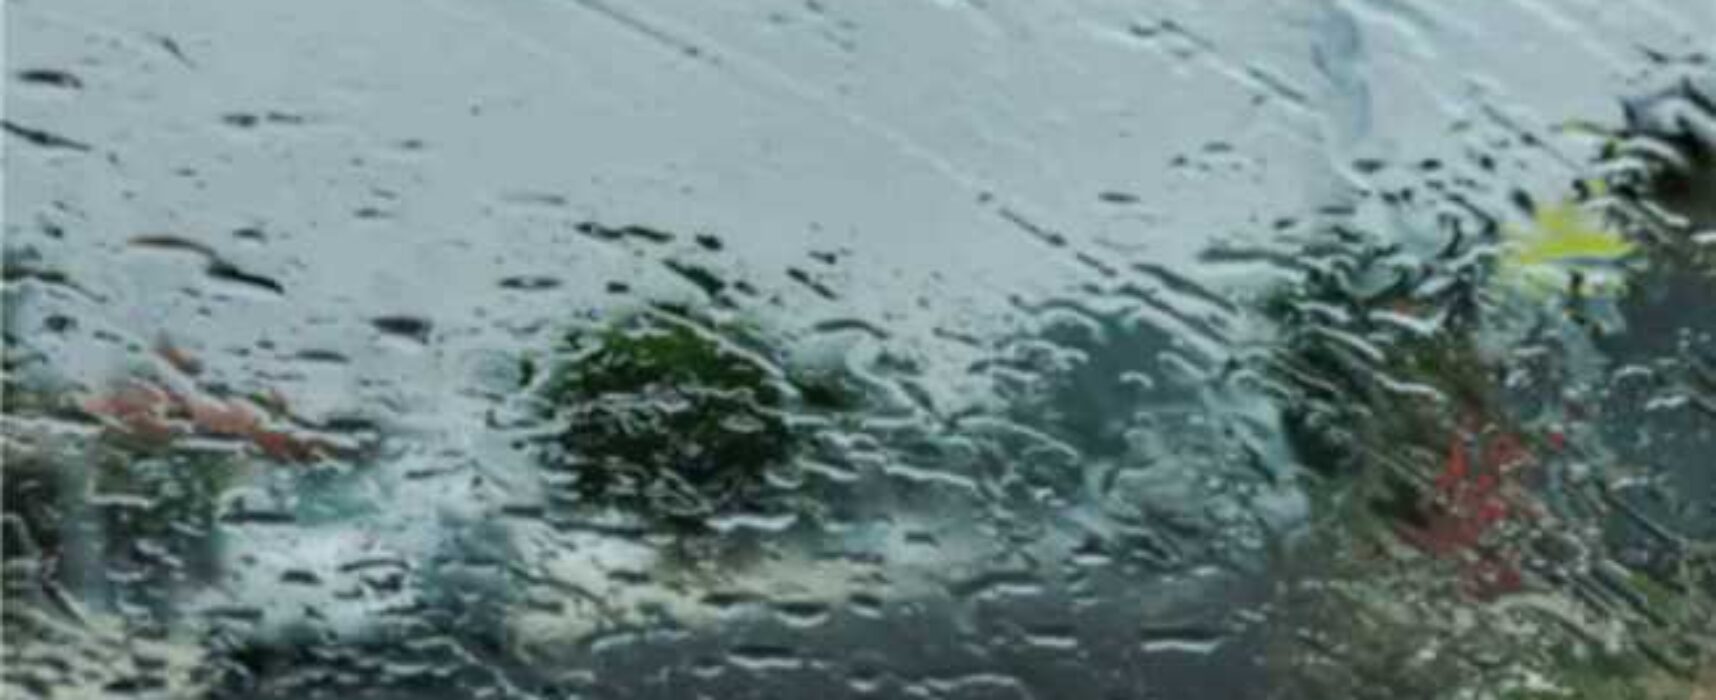 Alerta de chuvas: Defesa Civil prevê possibilidade de chuvas de até 122 mm nesta semana